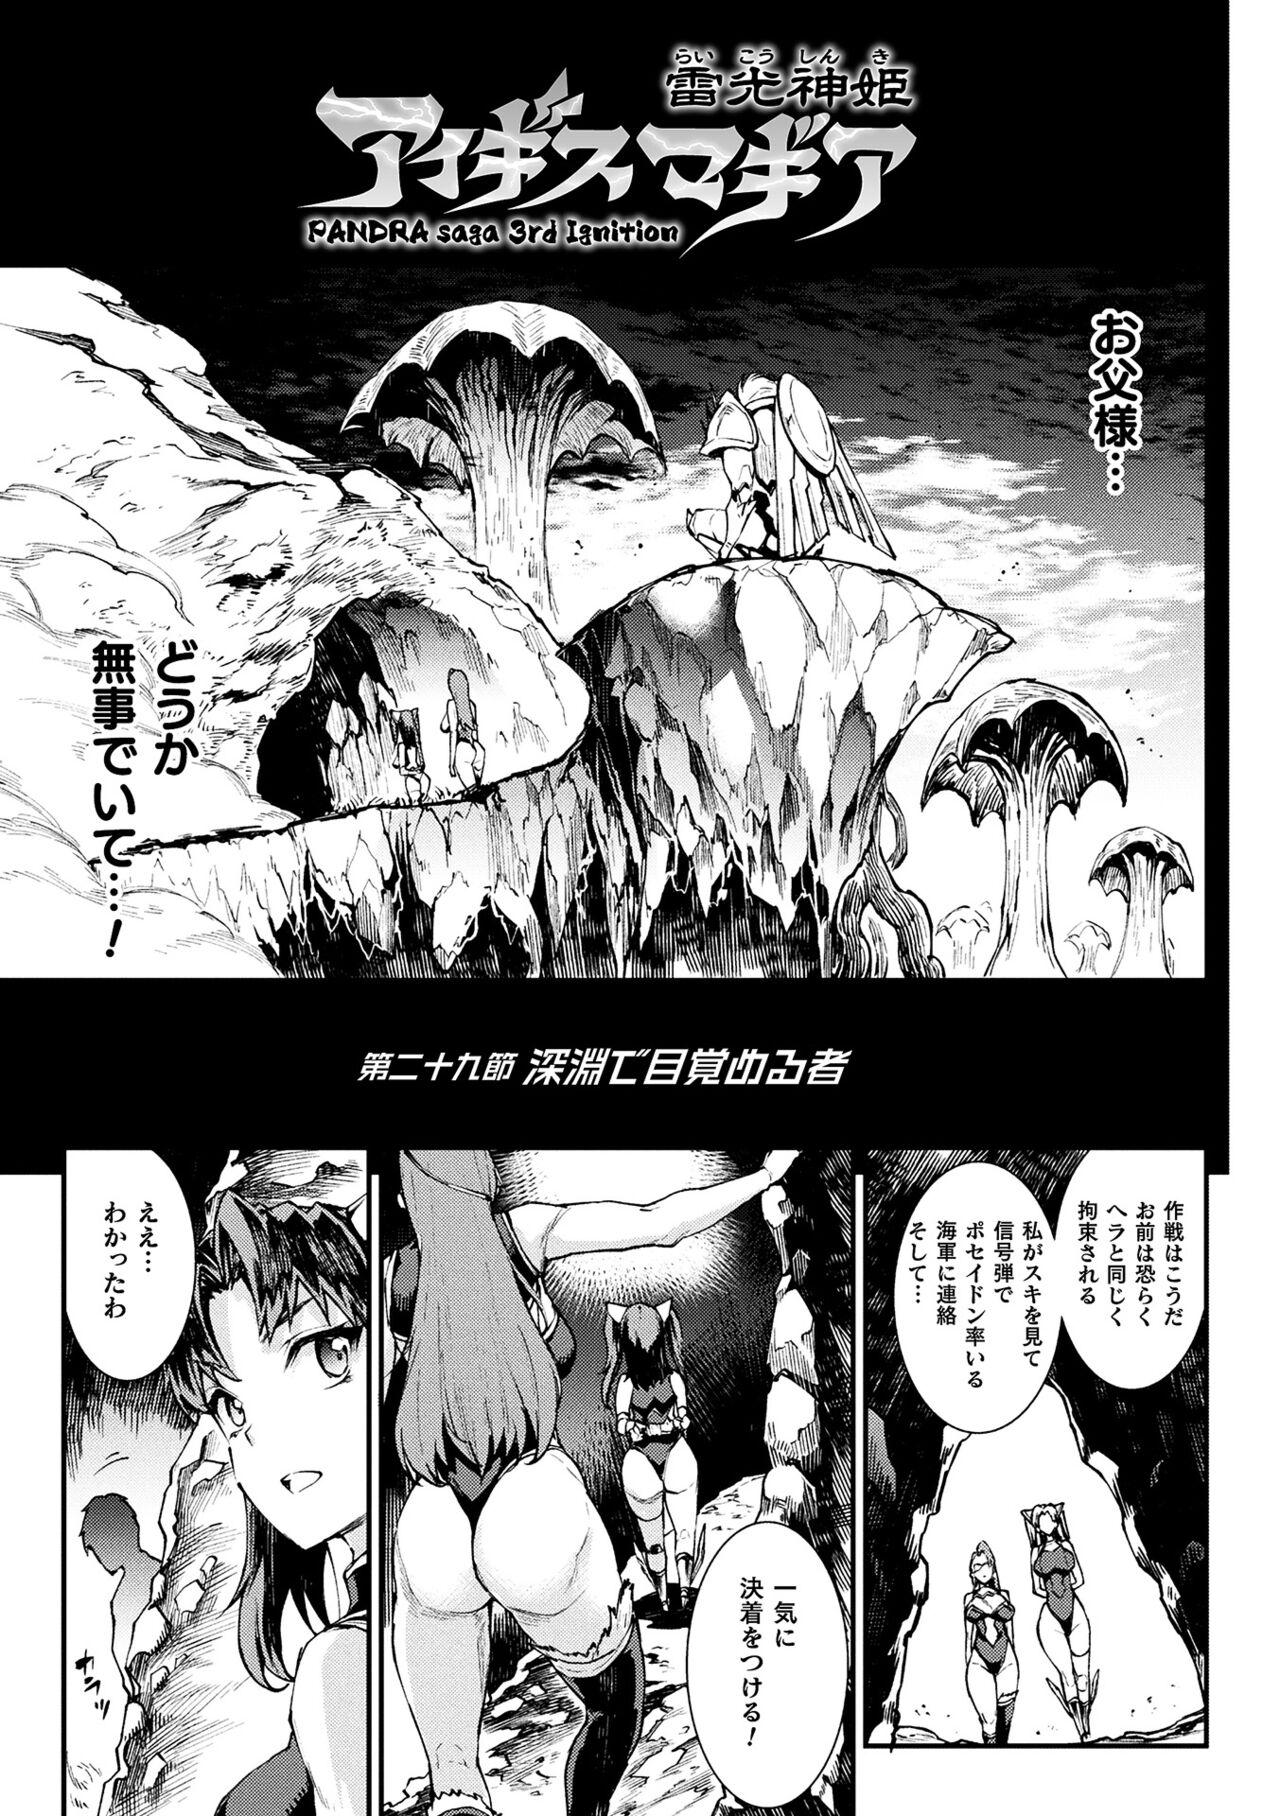 [Erect Sawaru] Raikou Shinki Igis Magia III -PANDRA saga 3rd ignition- 4 [Digital] 76